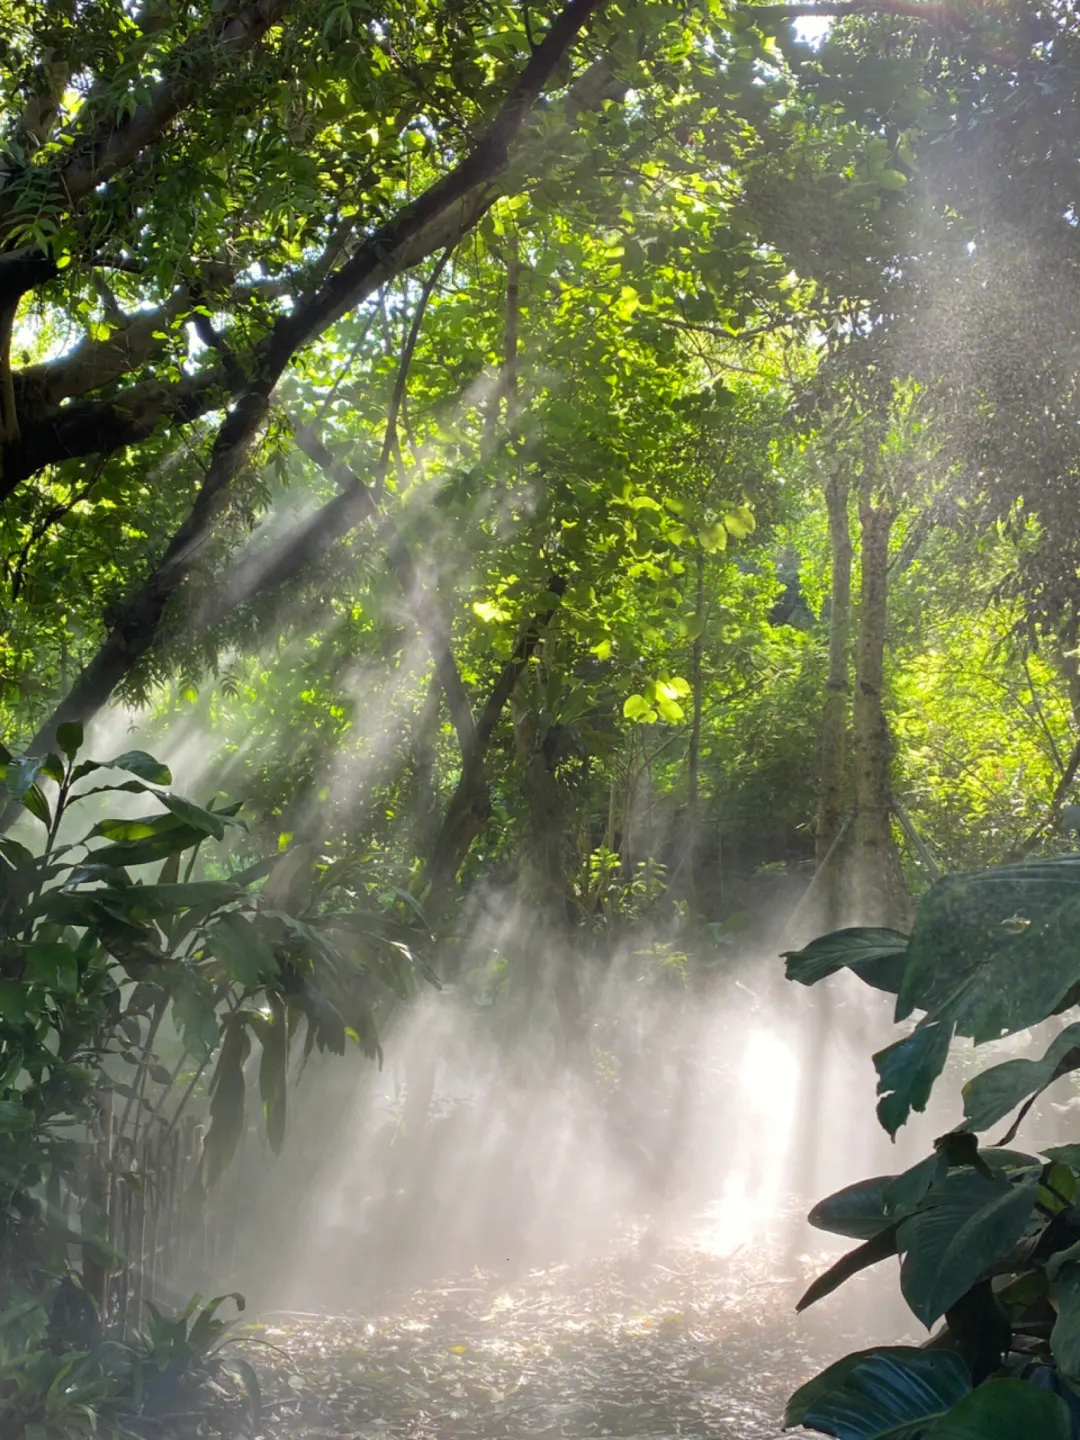 厦门植物园雨林世界图片6张 厦门植物园热带雨林区照片